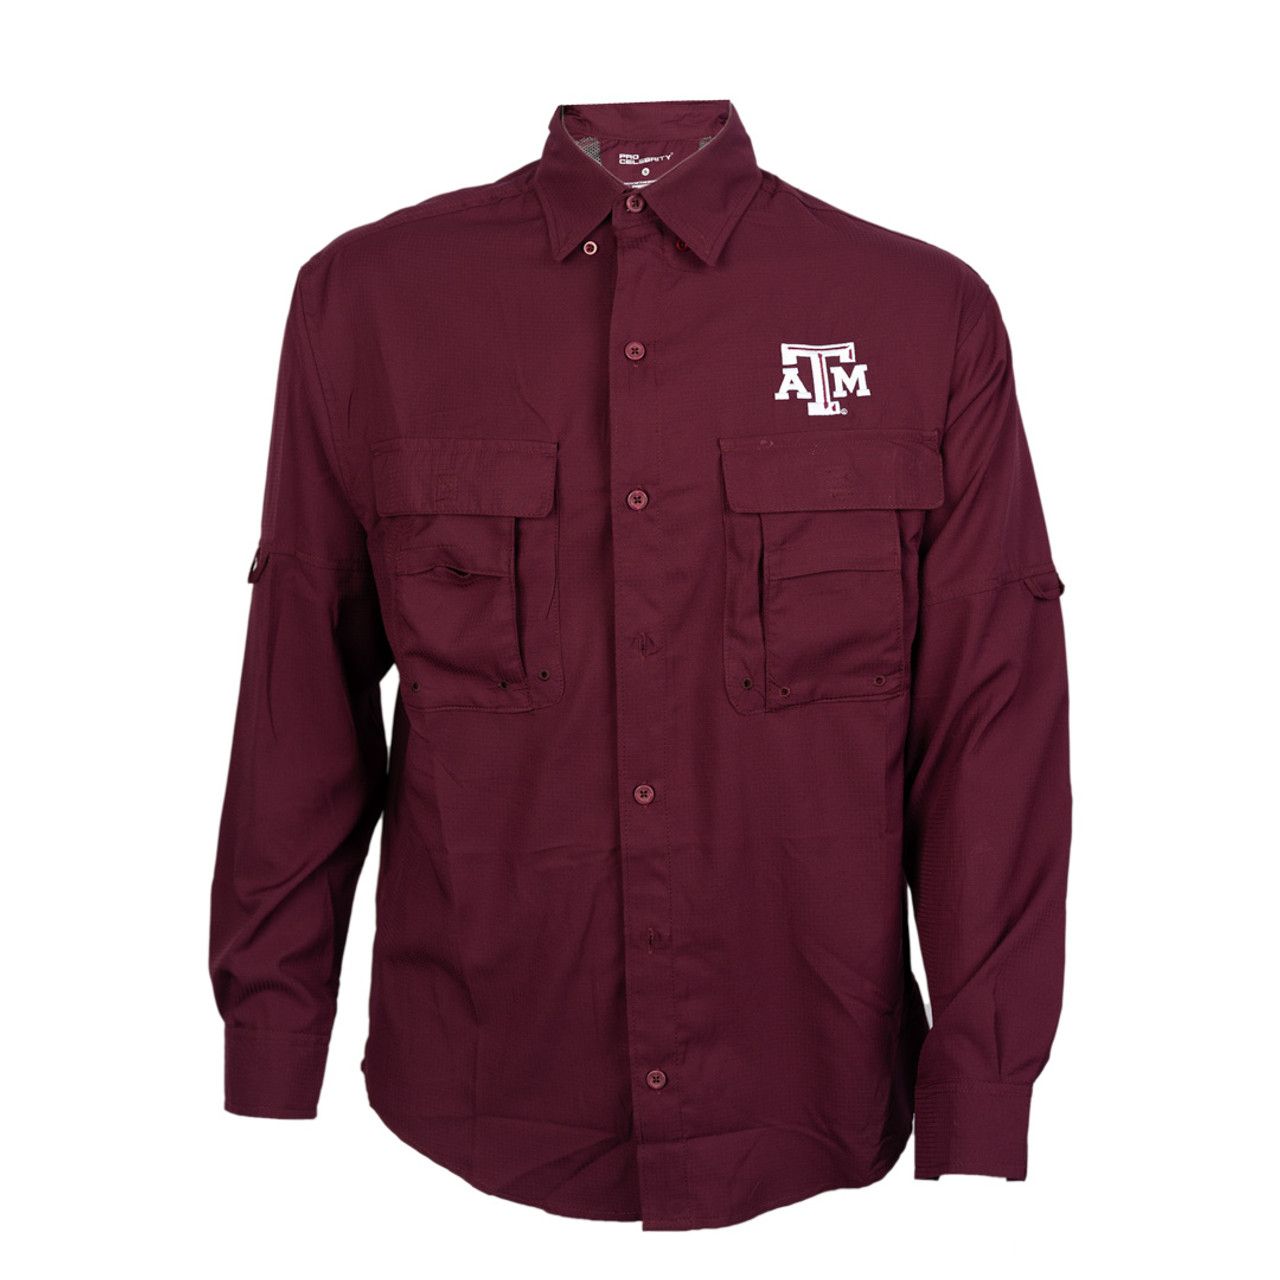 Texas A&M Fishing Shirt Long Sleeve - Maroon - The Warehouse at